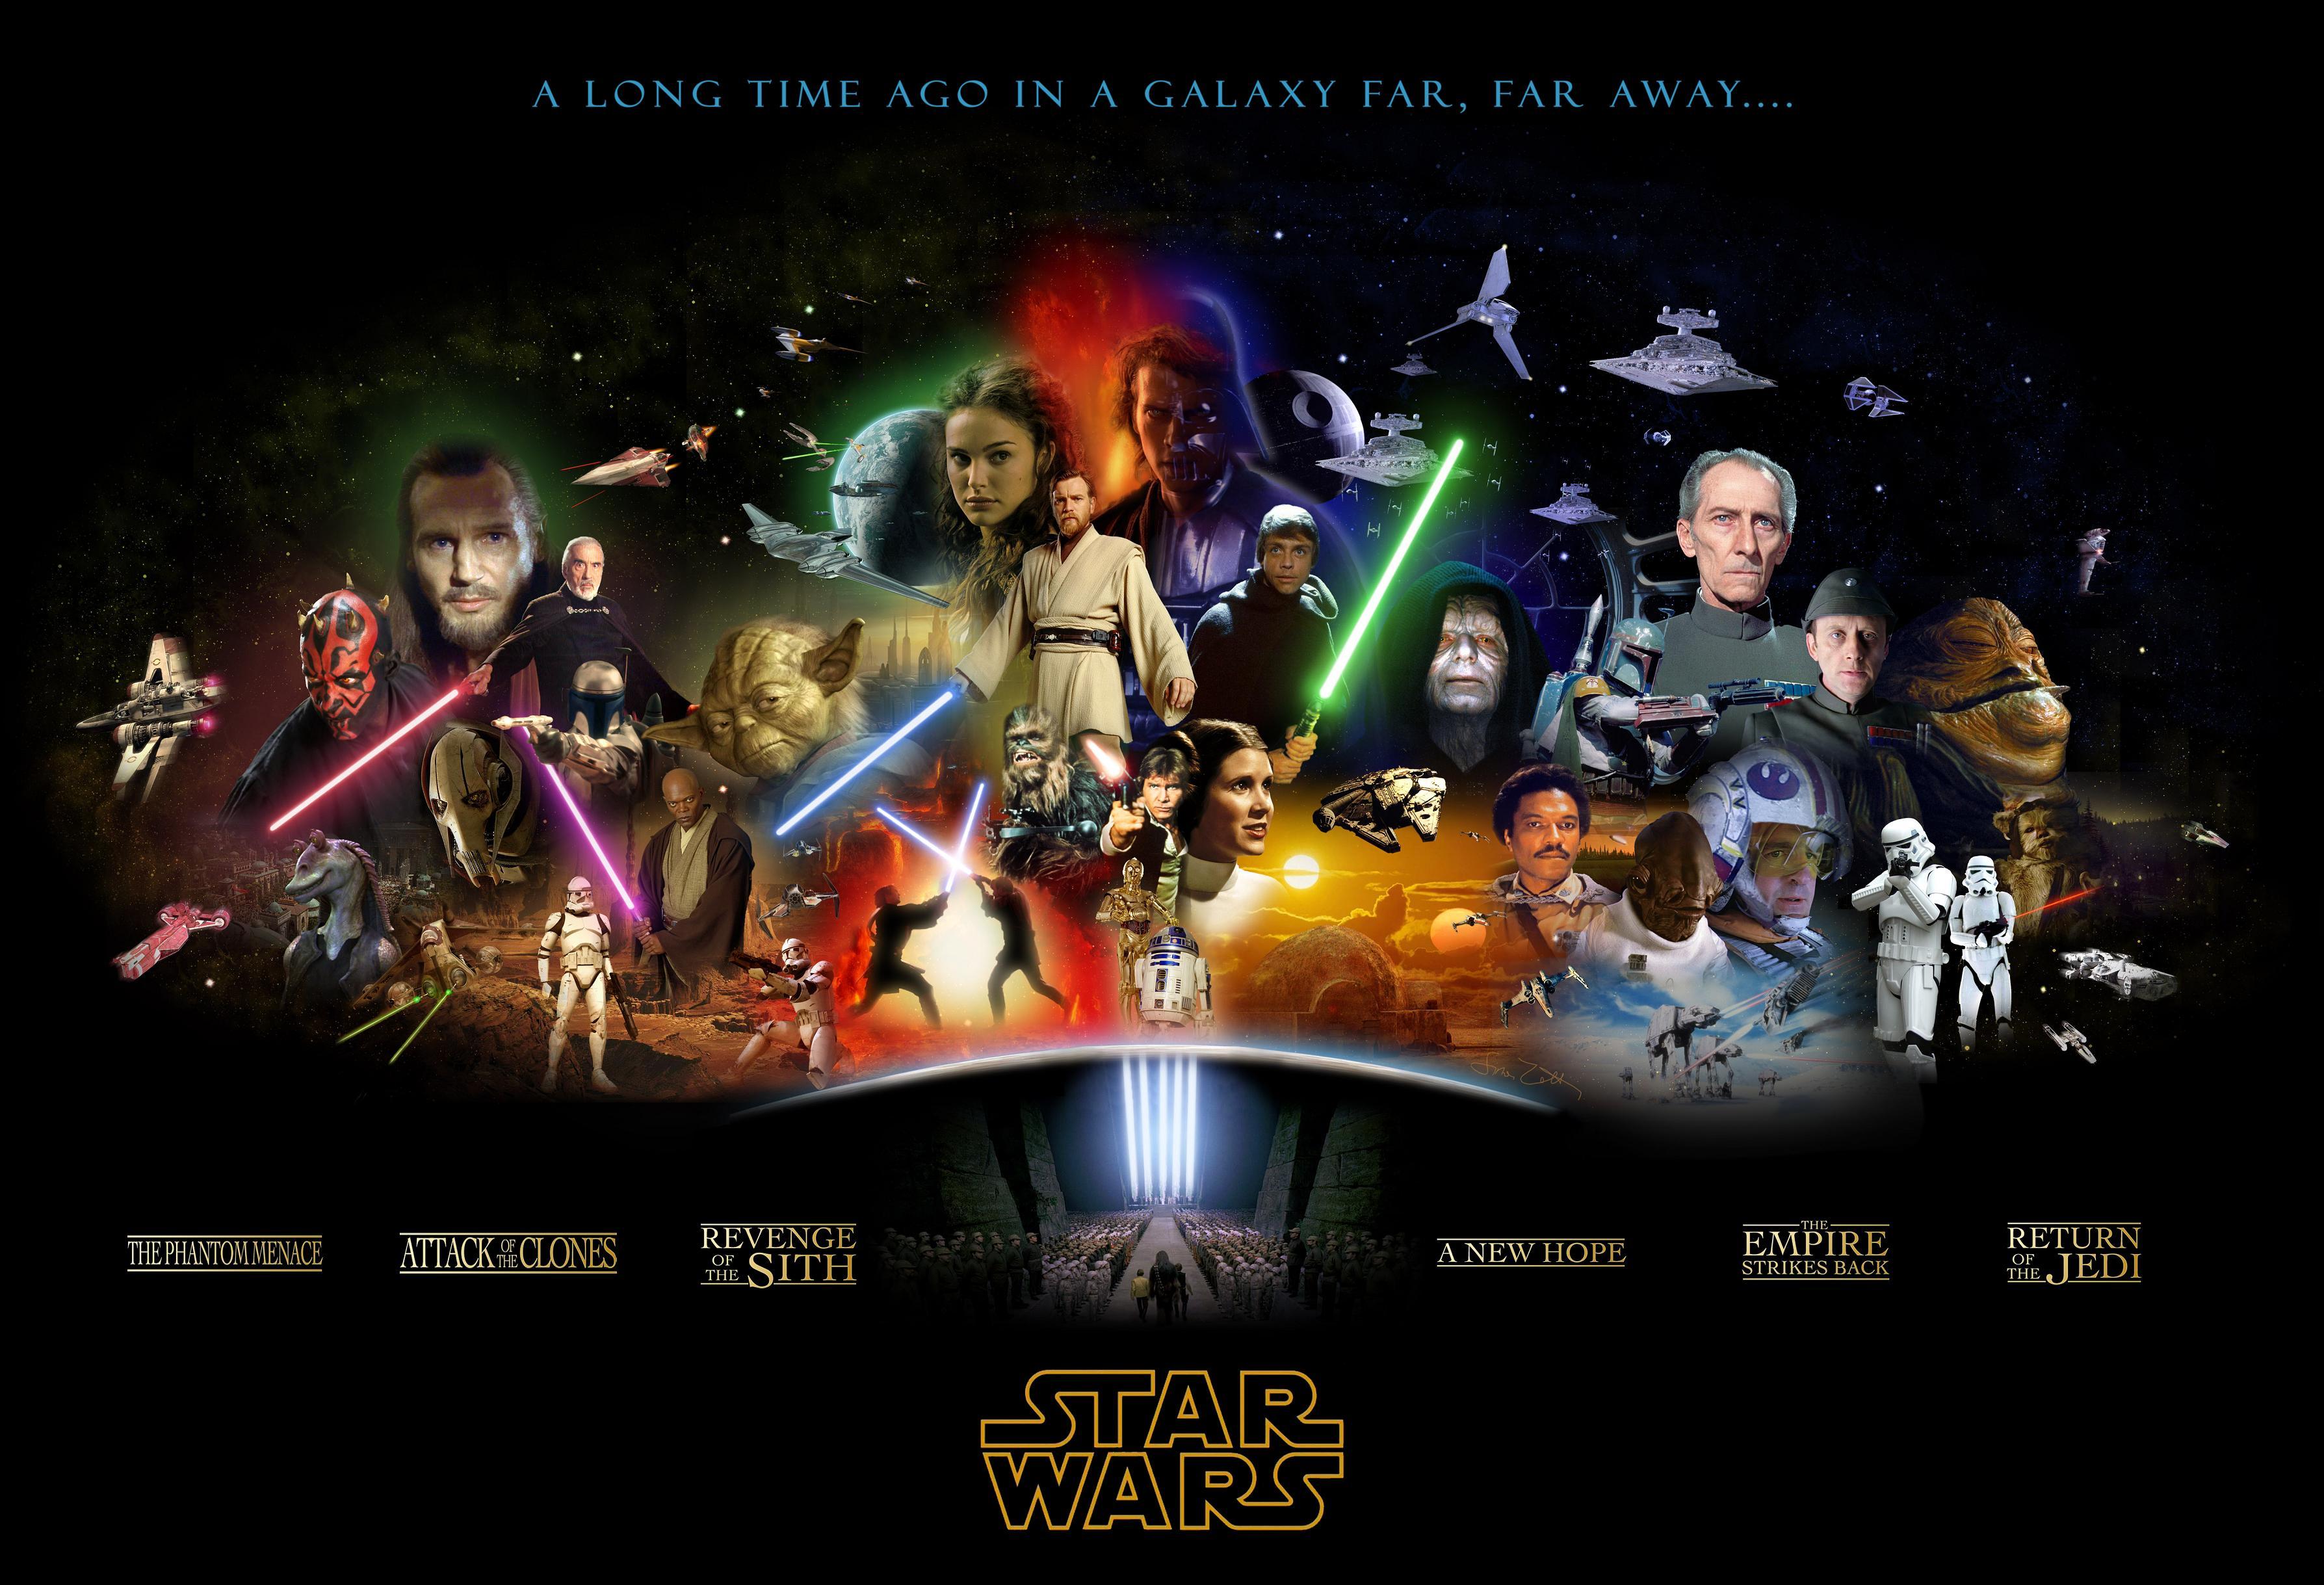 Star Wars Saga Wallpaper Free Star Wars Saga Background